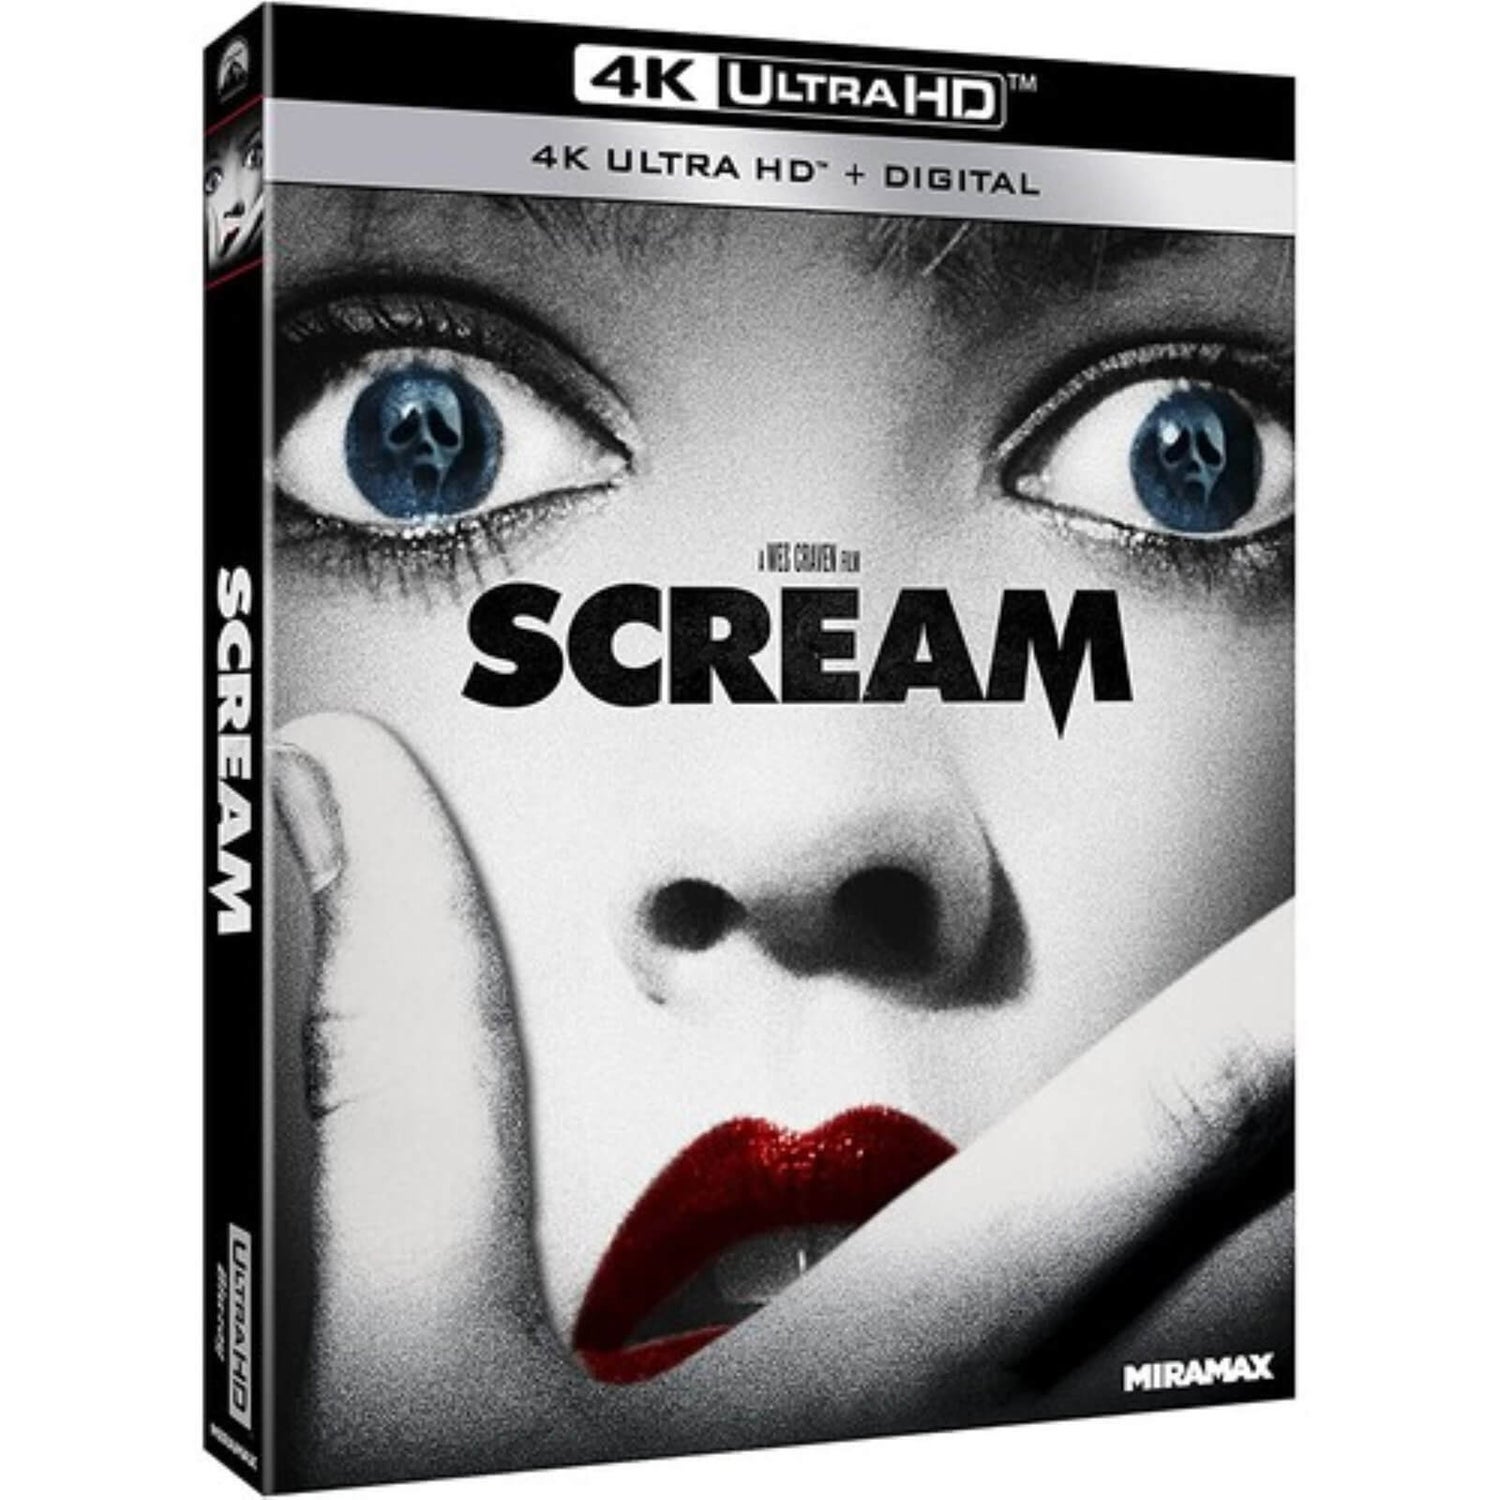 Scream - 4K Ultra HD